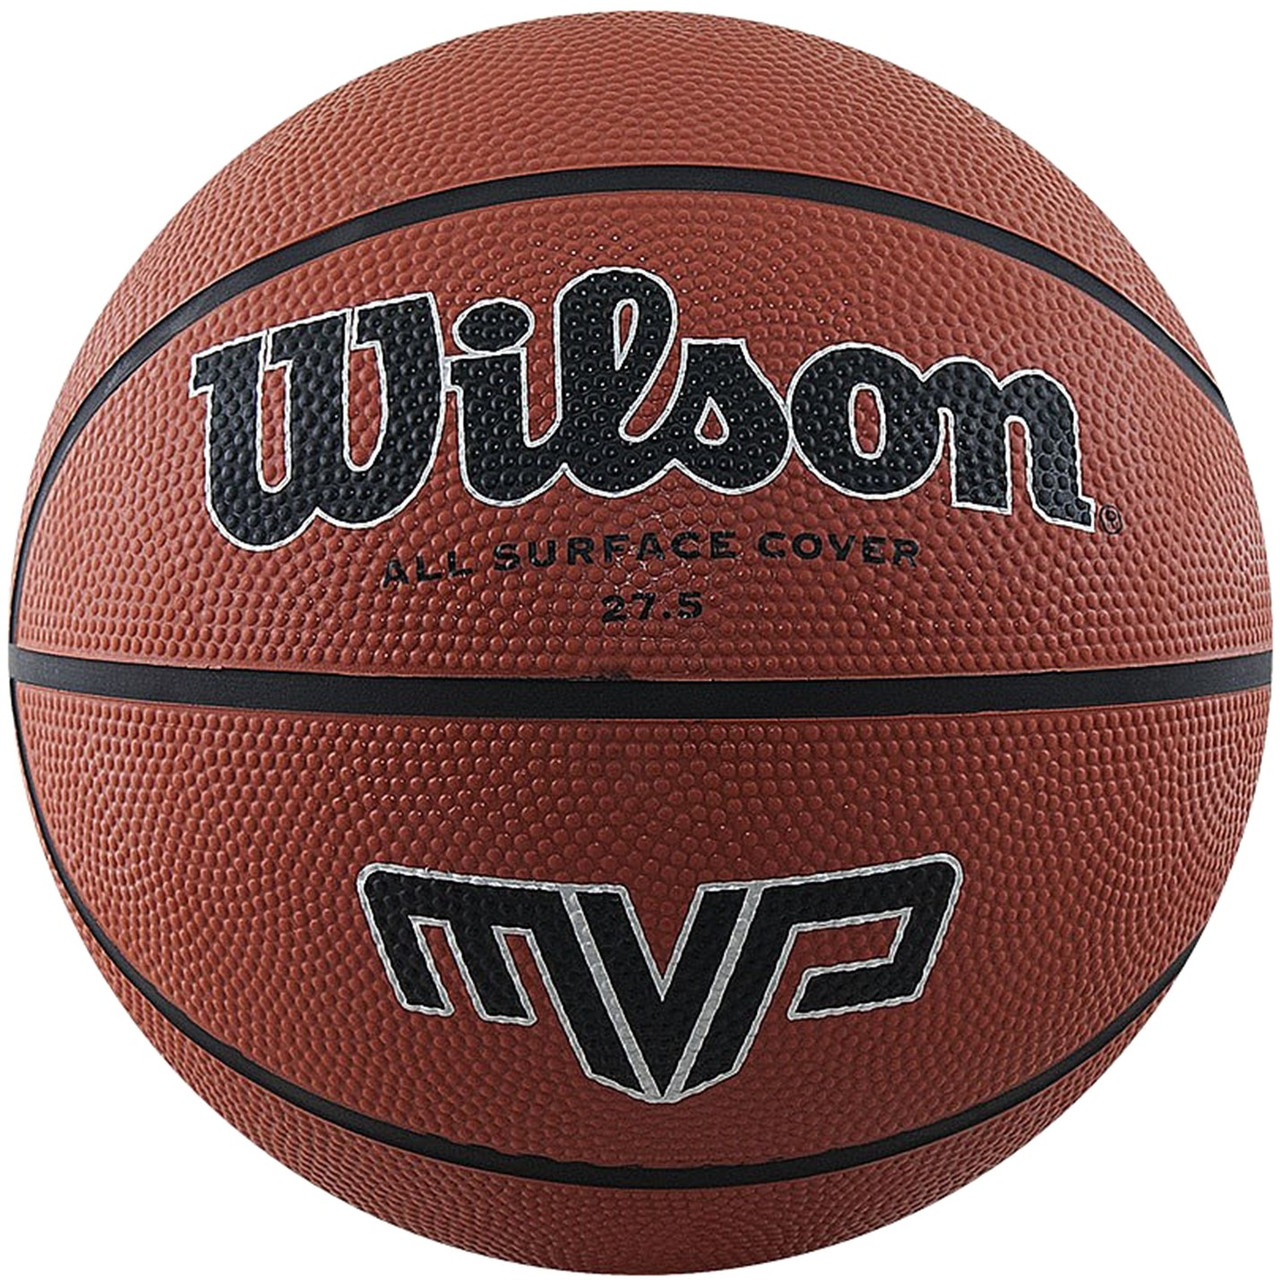 М'яч баскетбольний WILSON MVP 275 розмір 5 гумовий для гри на вулиці-в залі коричневий